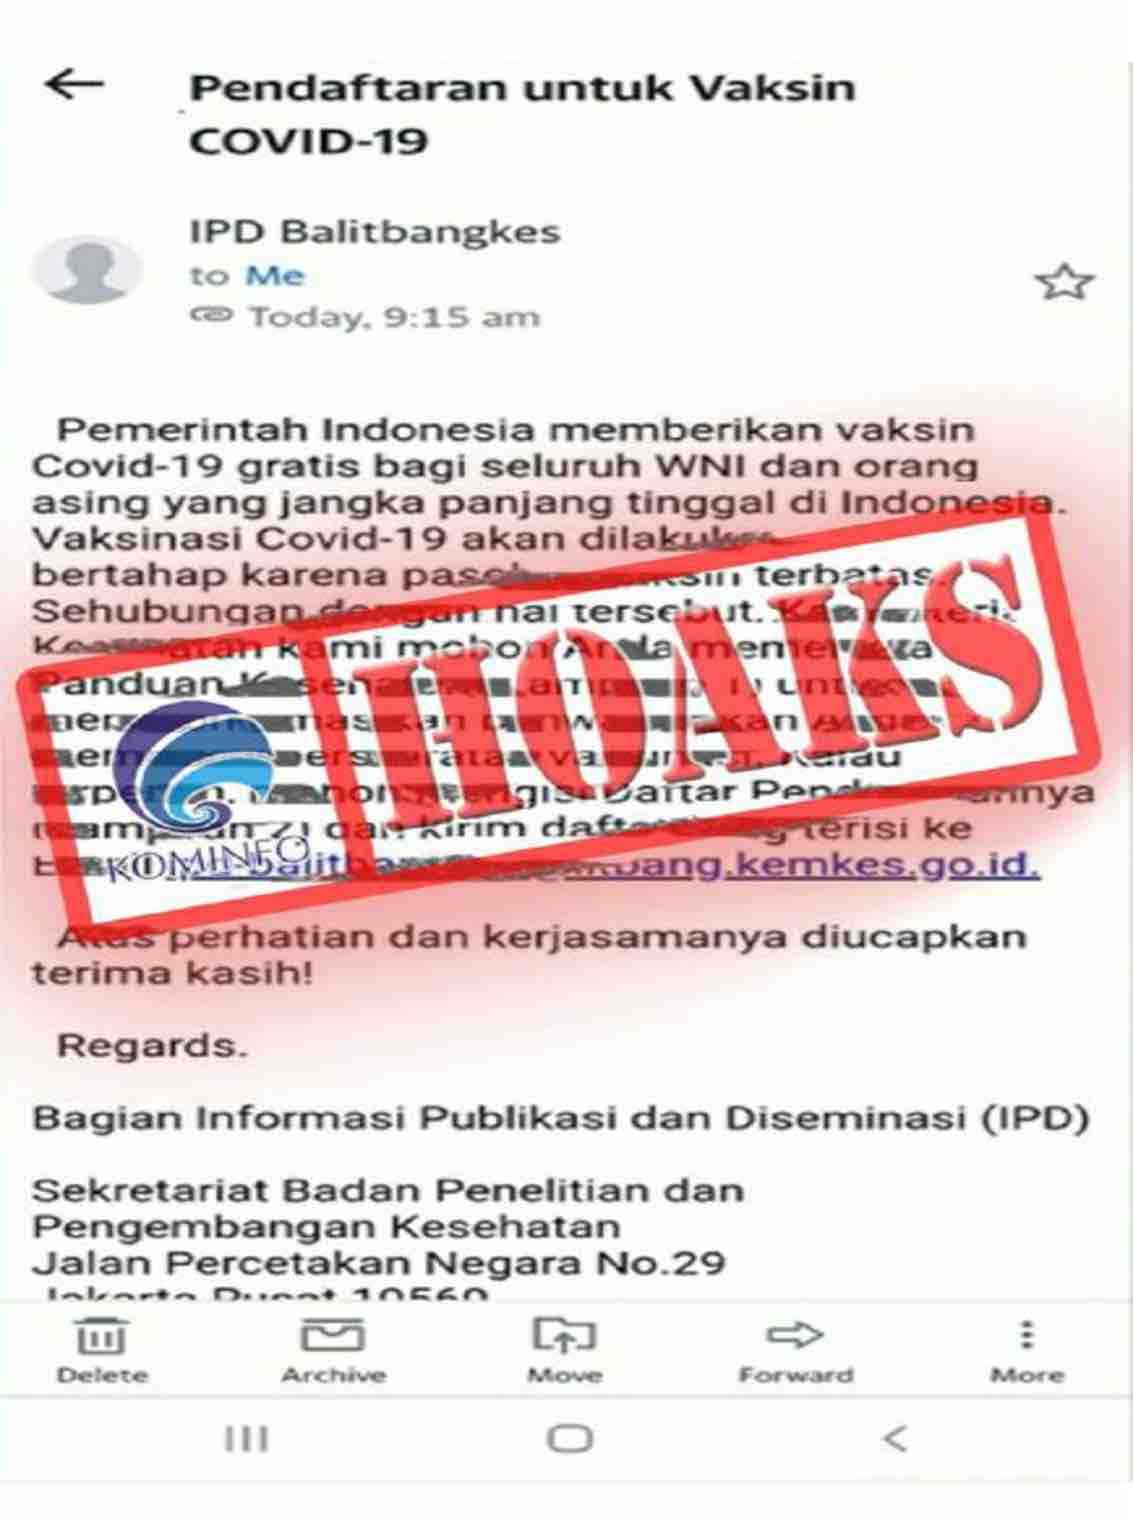 [HOAKS] Surat Elektronik Mengatasnamakan IPD Balitbangkes Terkait Pemberian Vaksin Covid-19